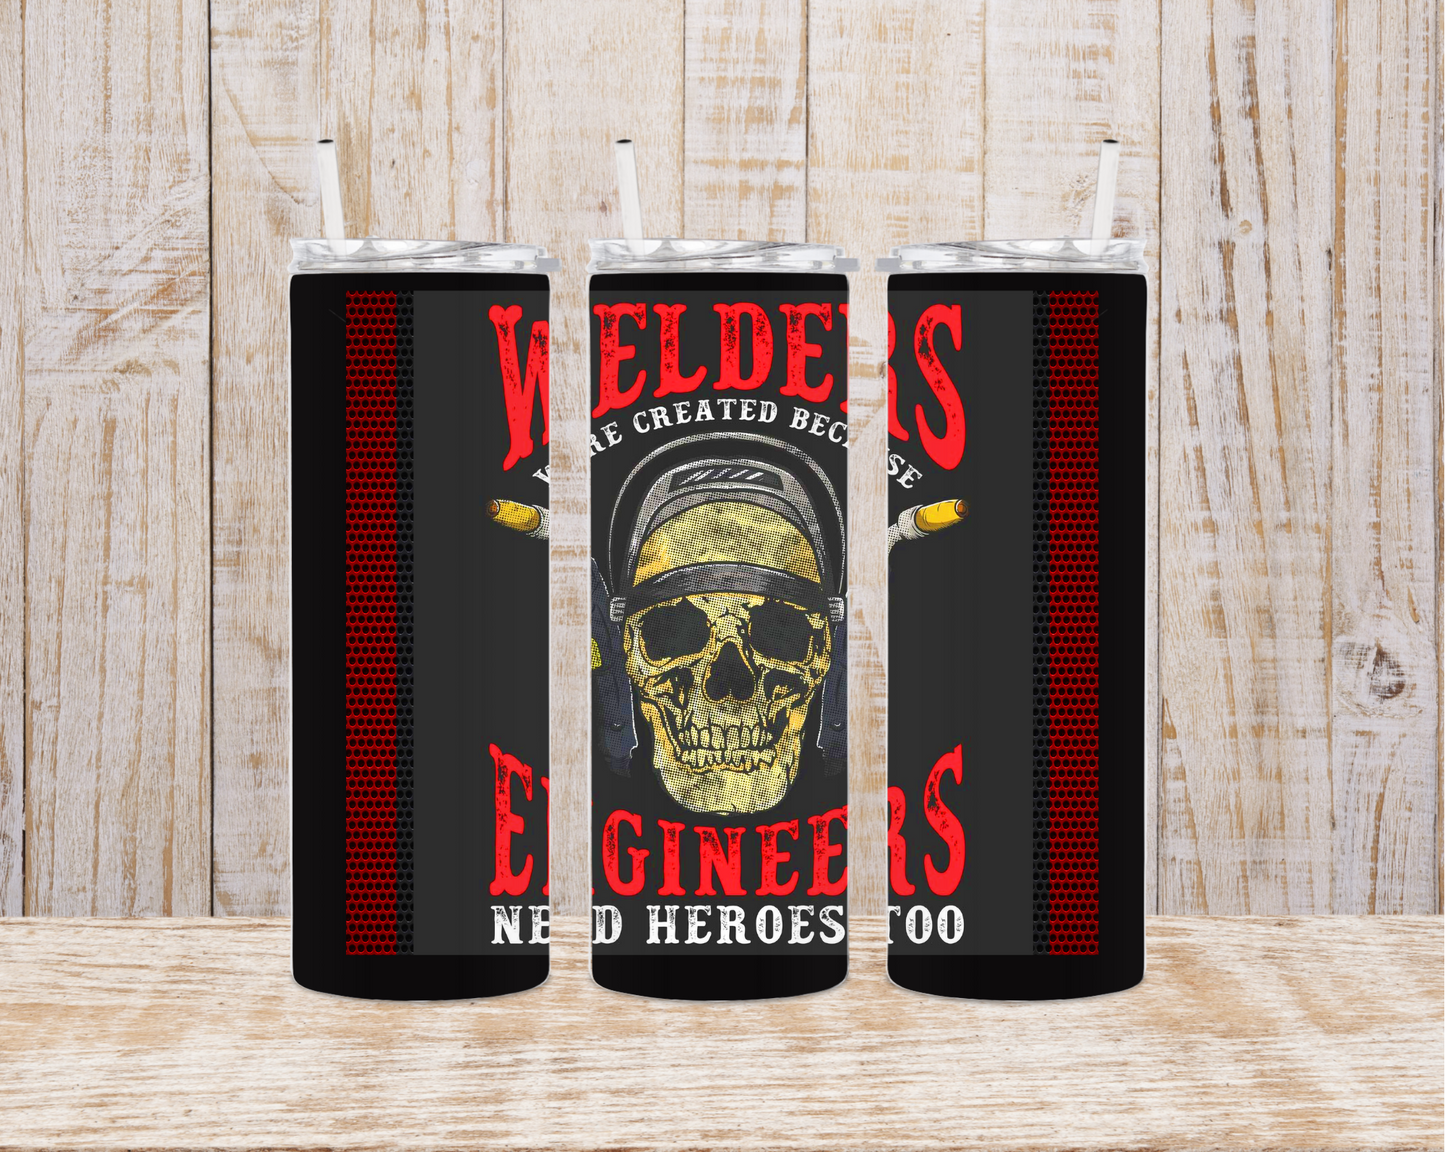 Welders - Engineers Need Heroes too